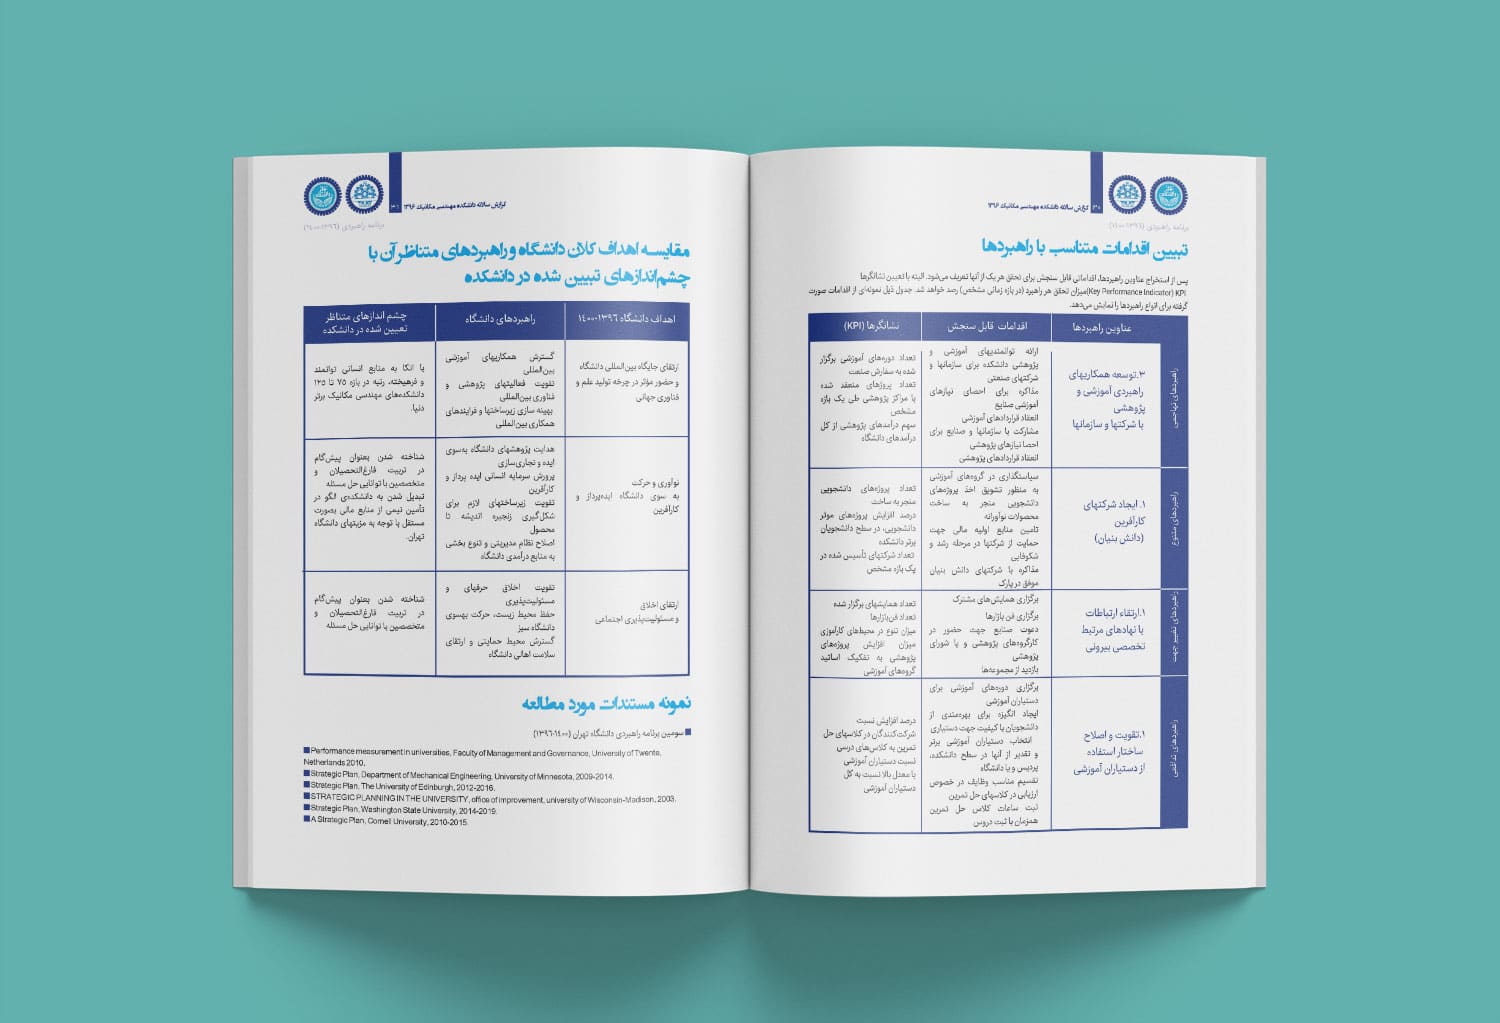 نمونه کار طراحی و صفحه آرایی گزارش عملکرد دانشگاه تهران سال 1396